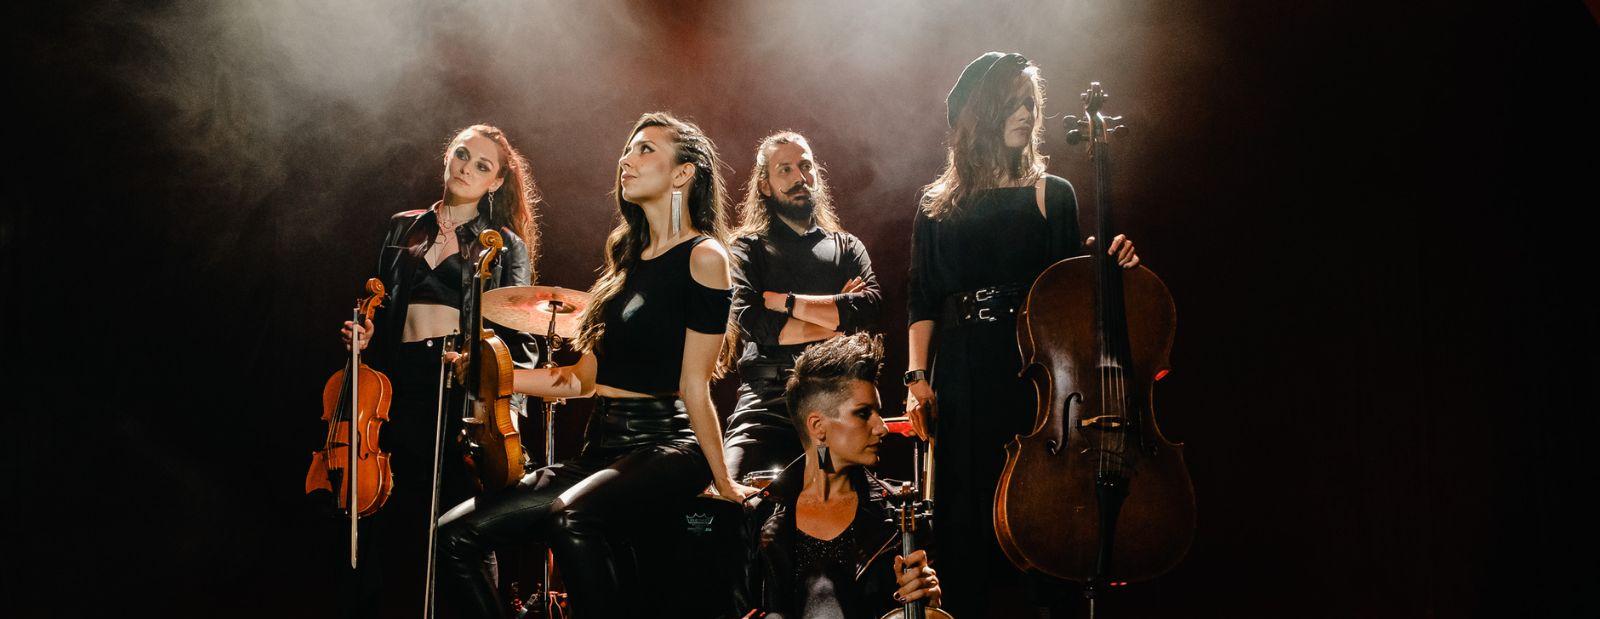 Концерт Atomic Cellos «Мировые рок-хиты на виолончелях» со скидкой 30%